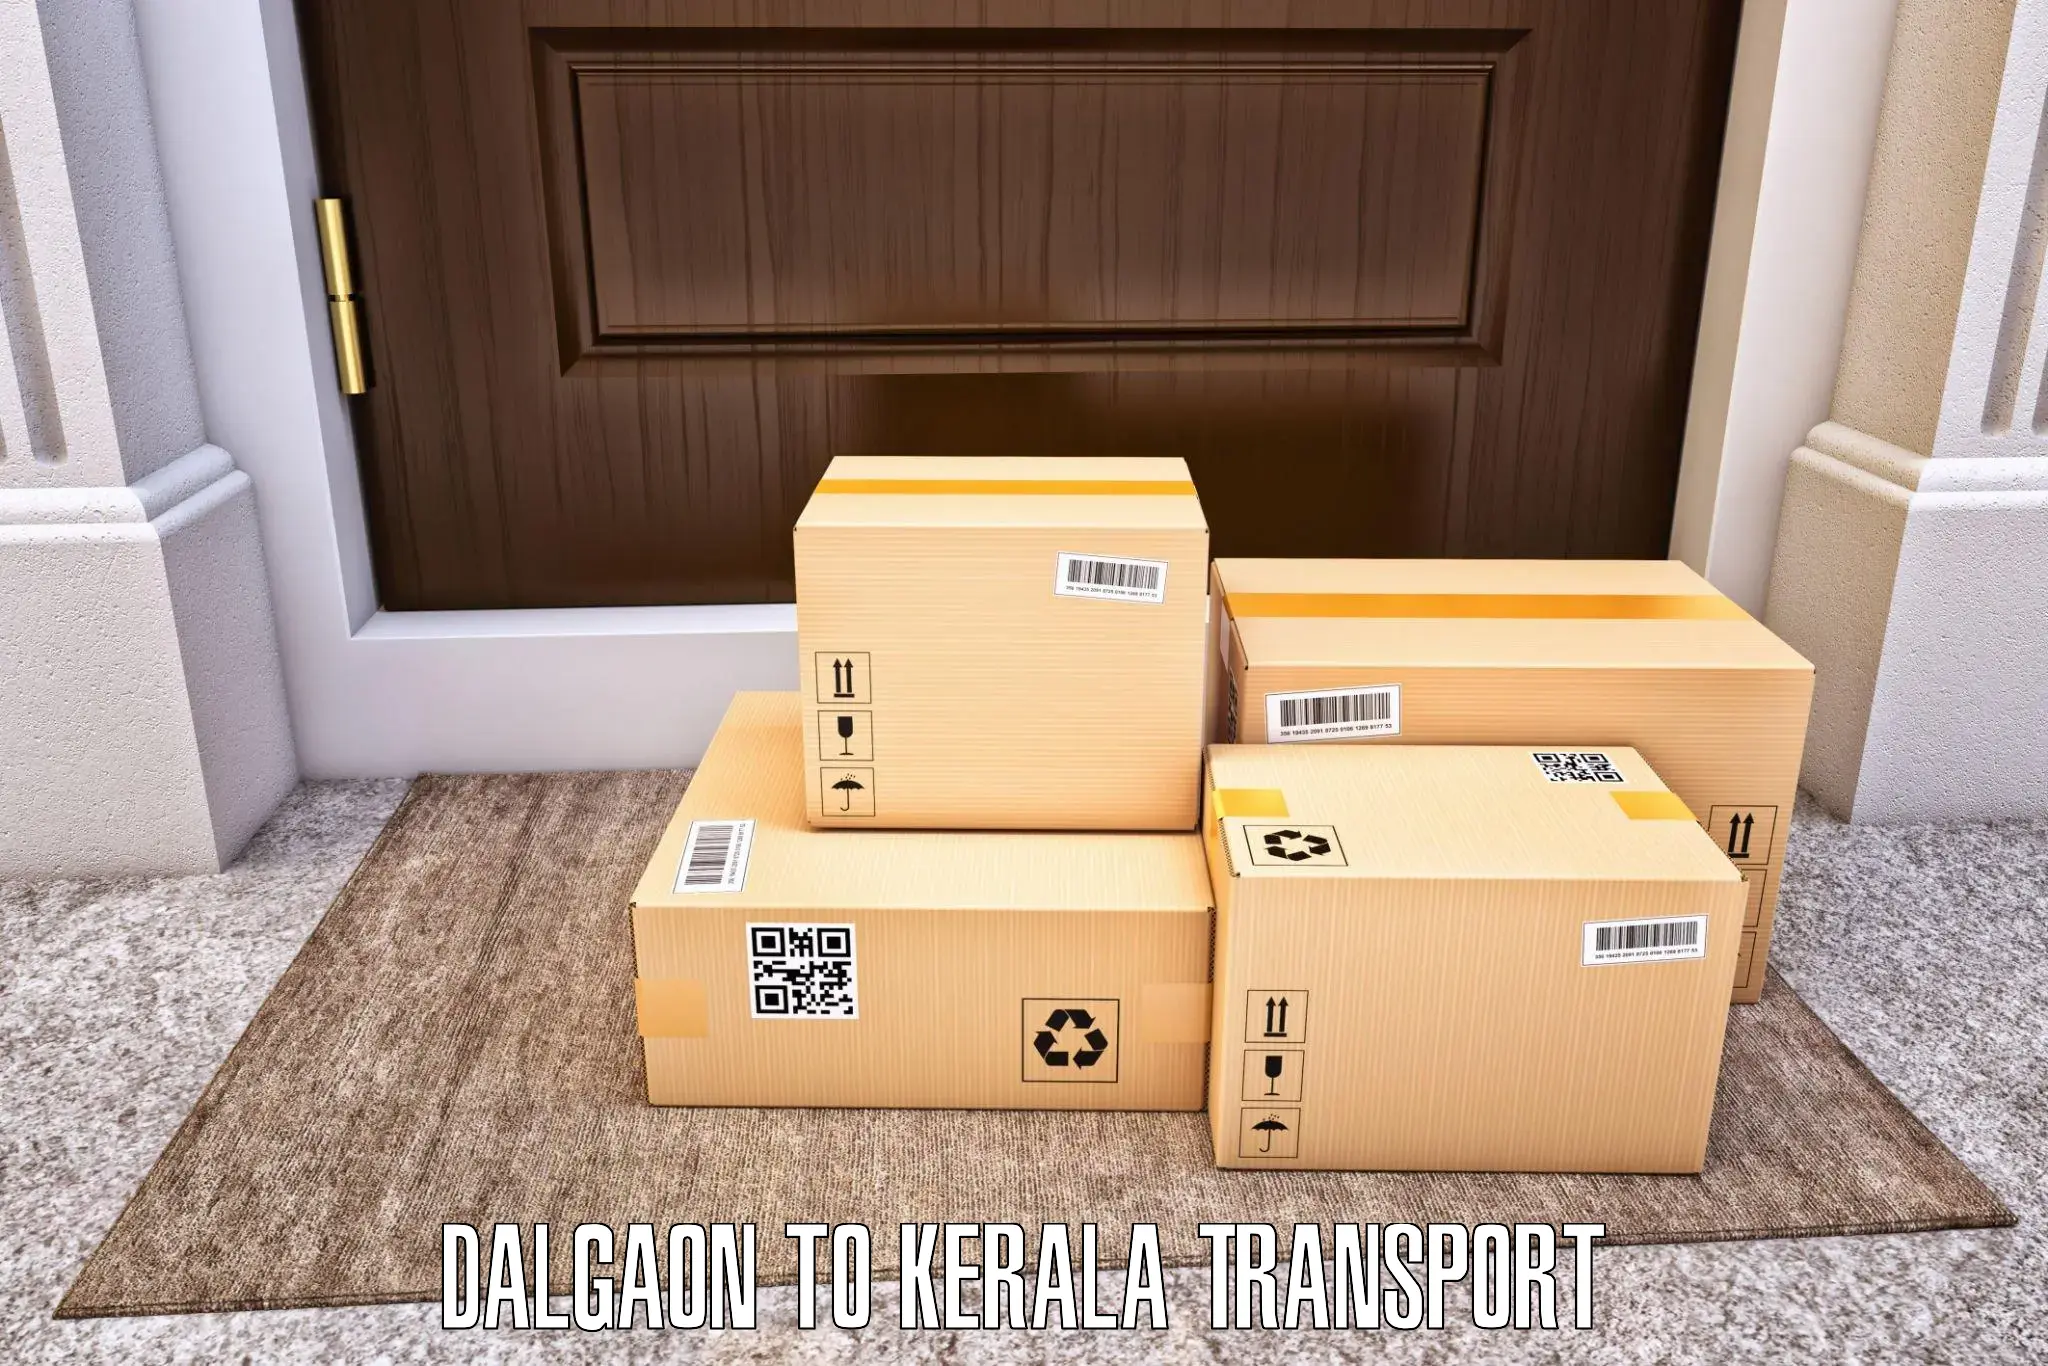 Pick up transport service Dalgaon to Valanchery